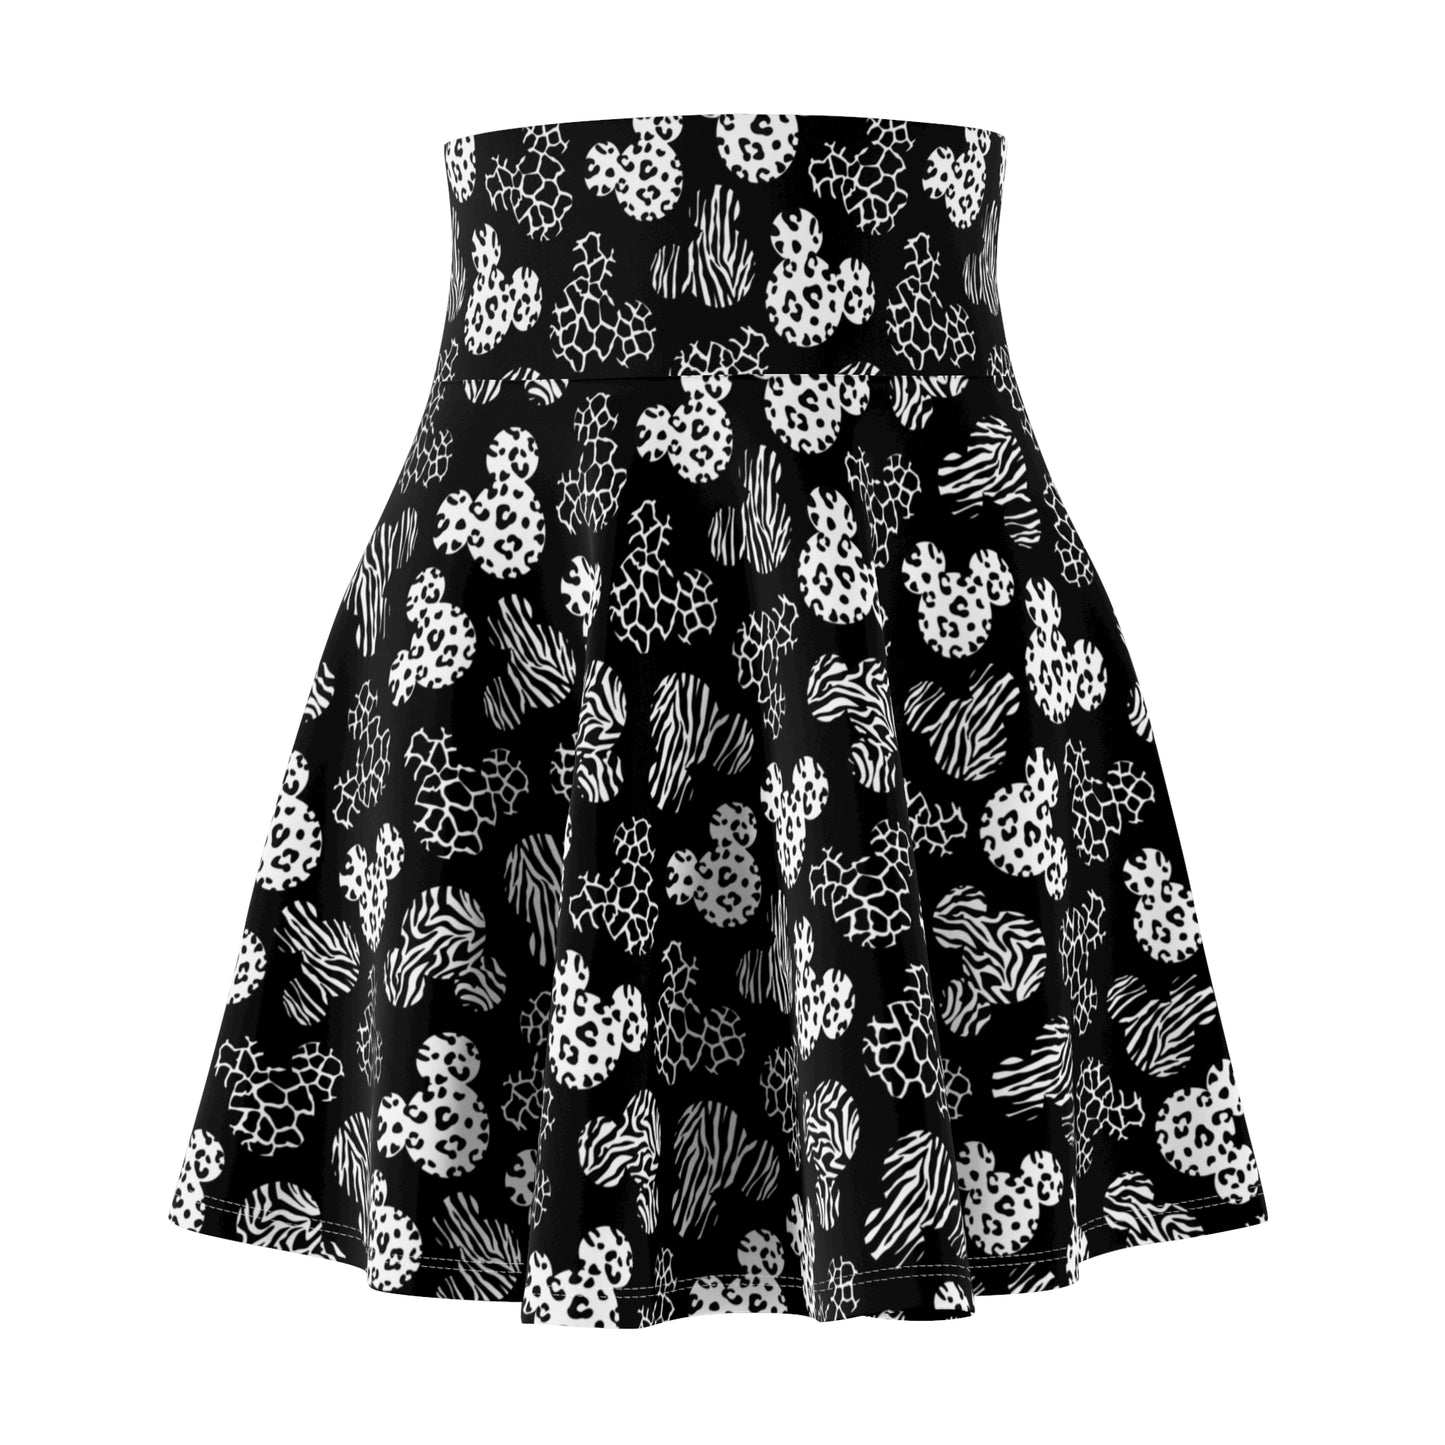 Black And White Animal Prints Women's Skater Skirt